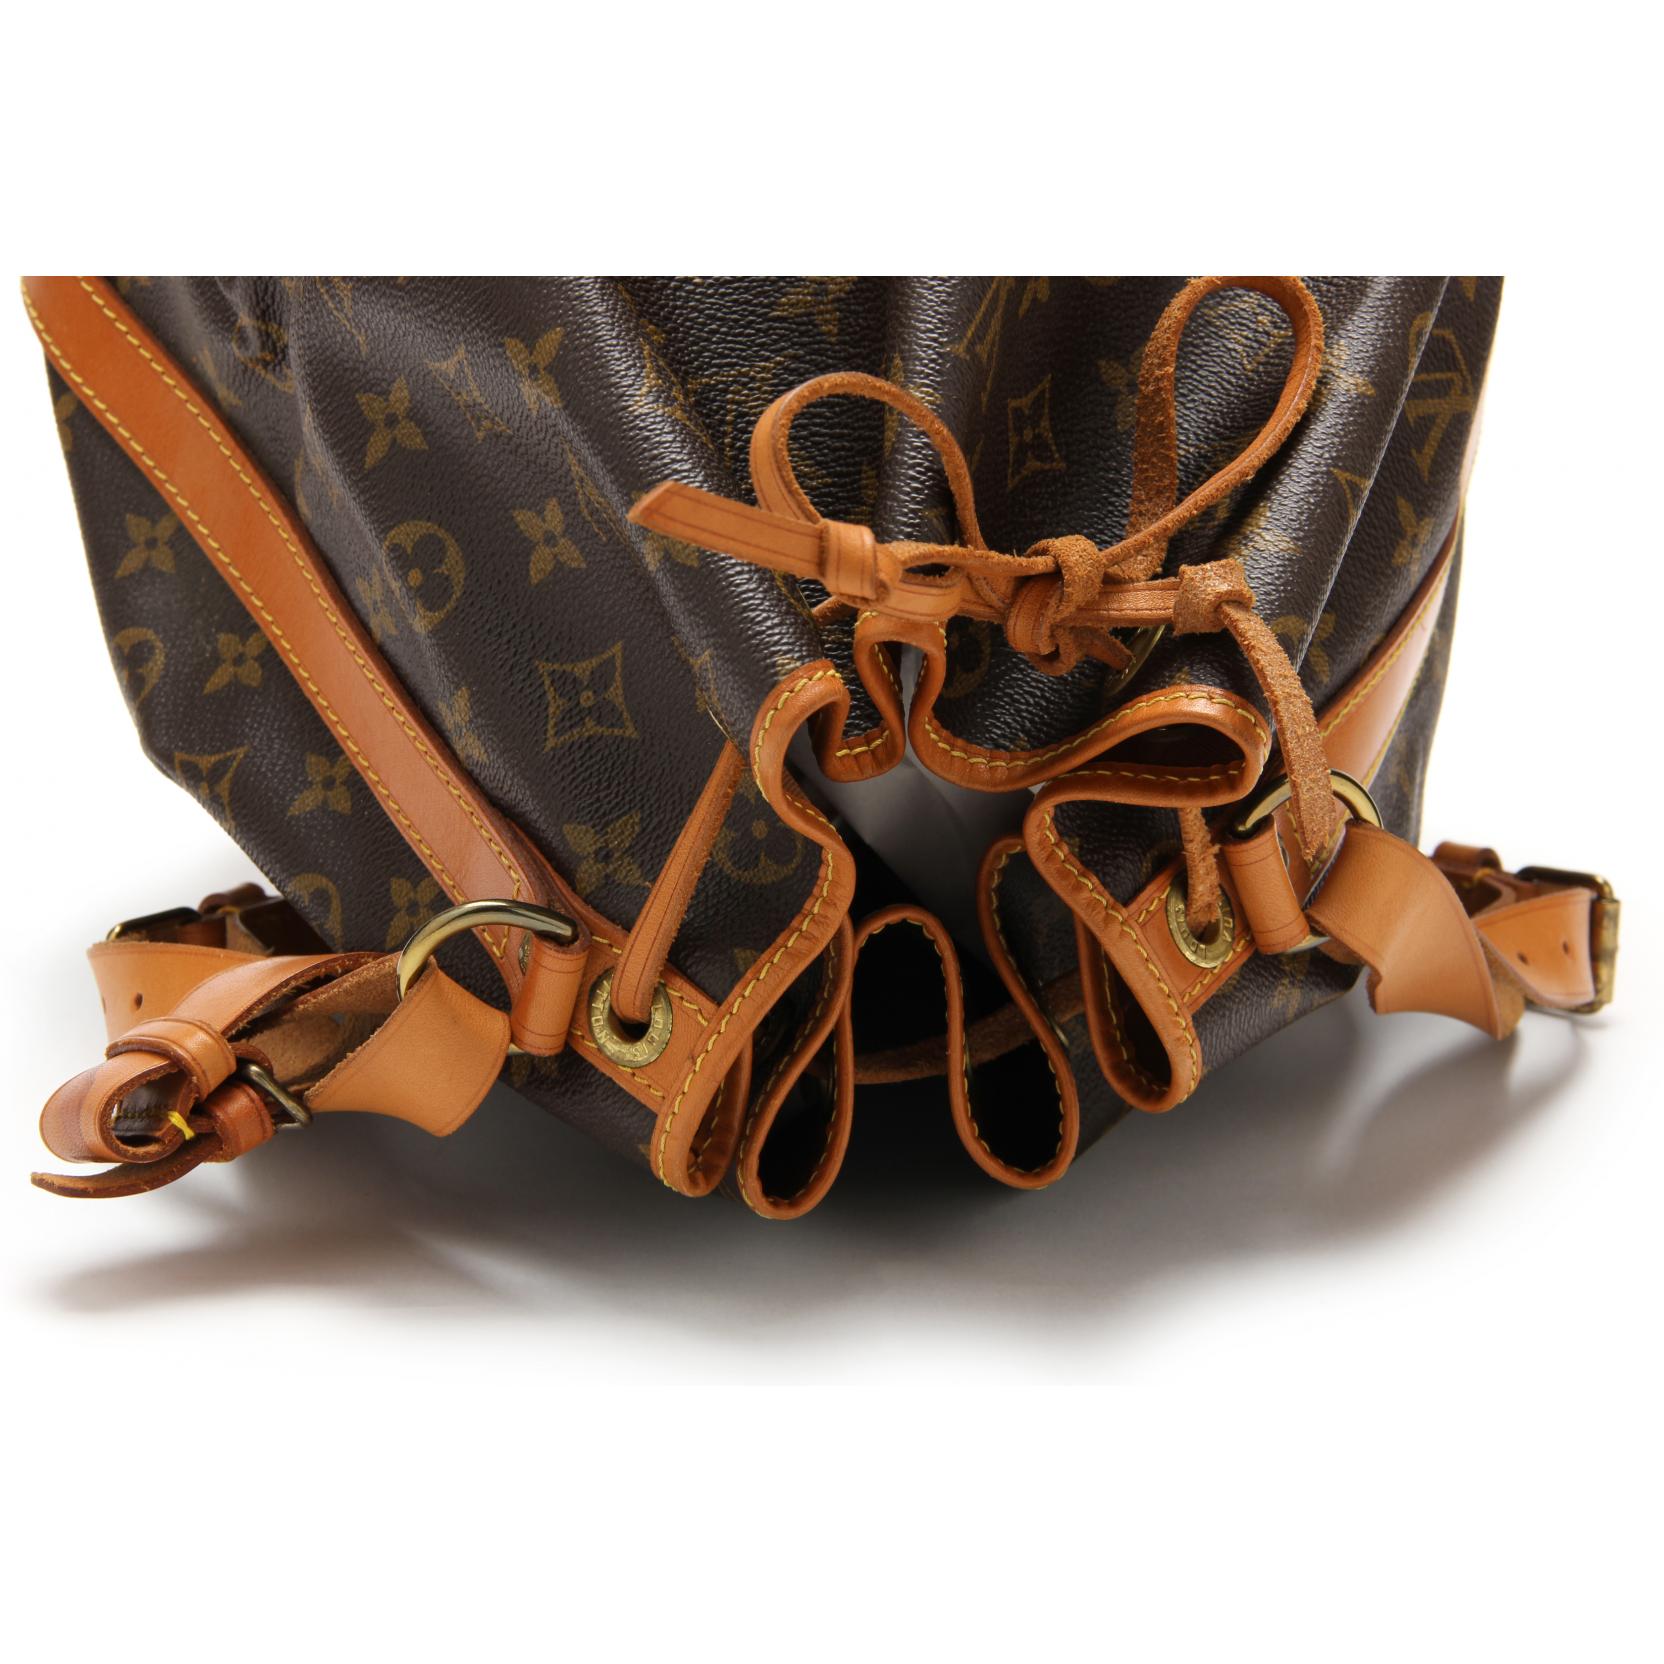 Sold at Auction: Vintage Louis Vuitton Malletier Shoulder Bag